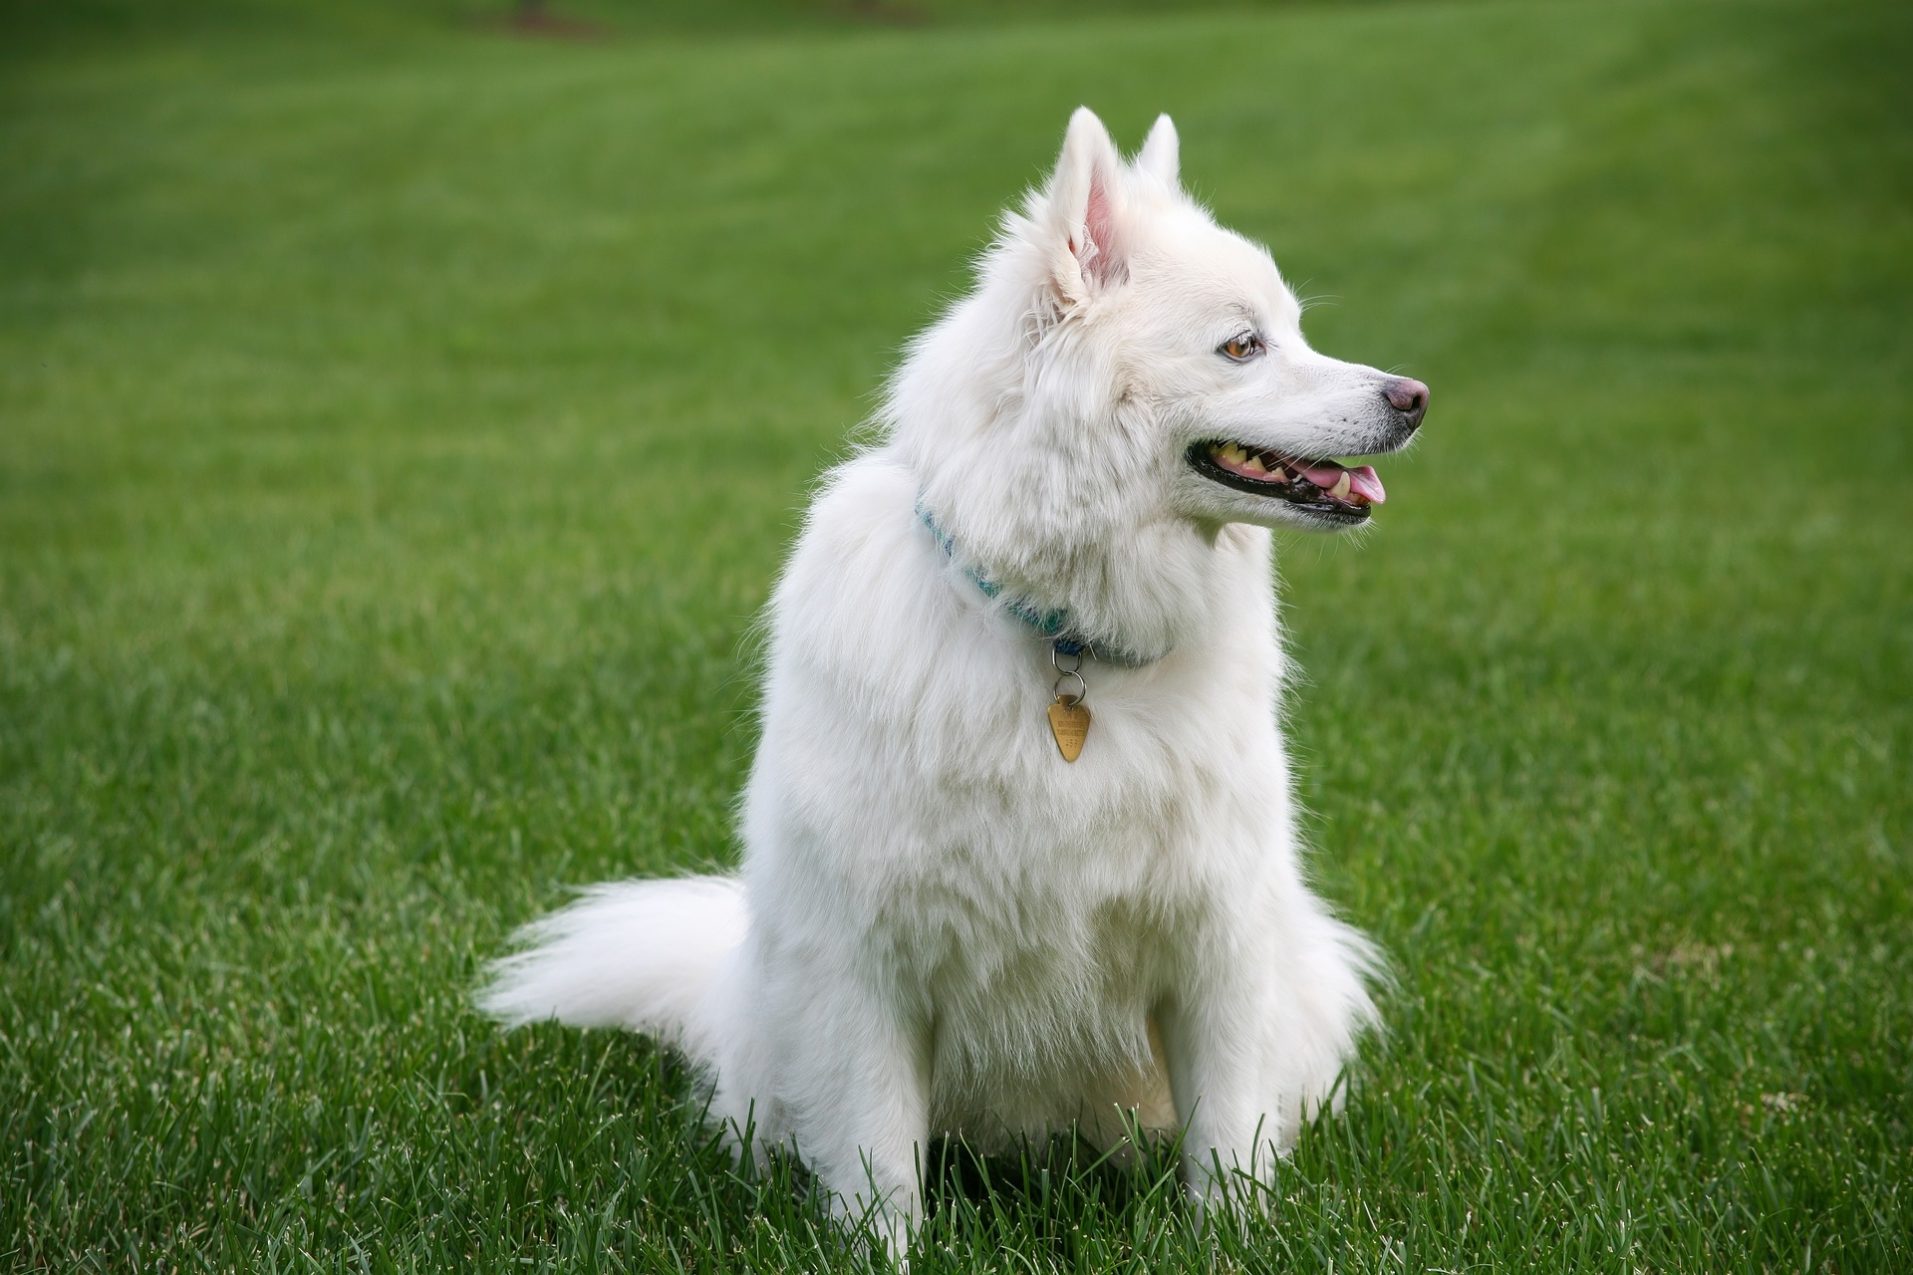 Lerne deinen Hund zu verstehen und trainieren, indem du die Beschwichtigungssignale (Calming Signals) richtig identifizierst.